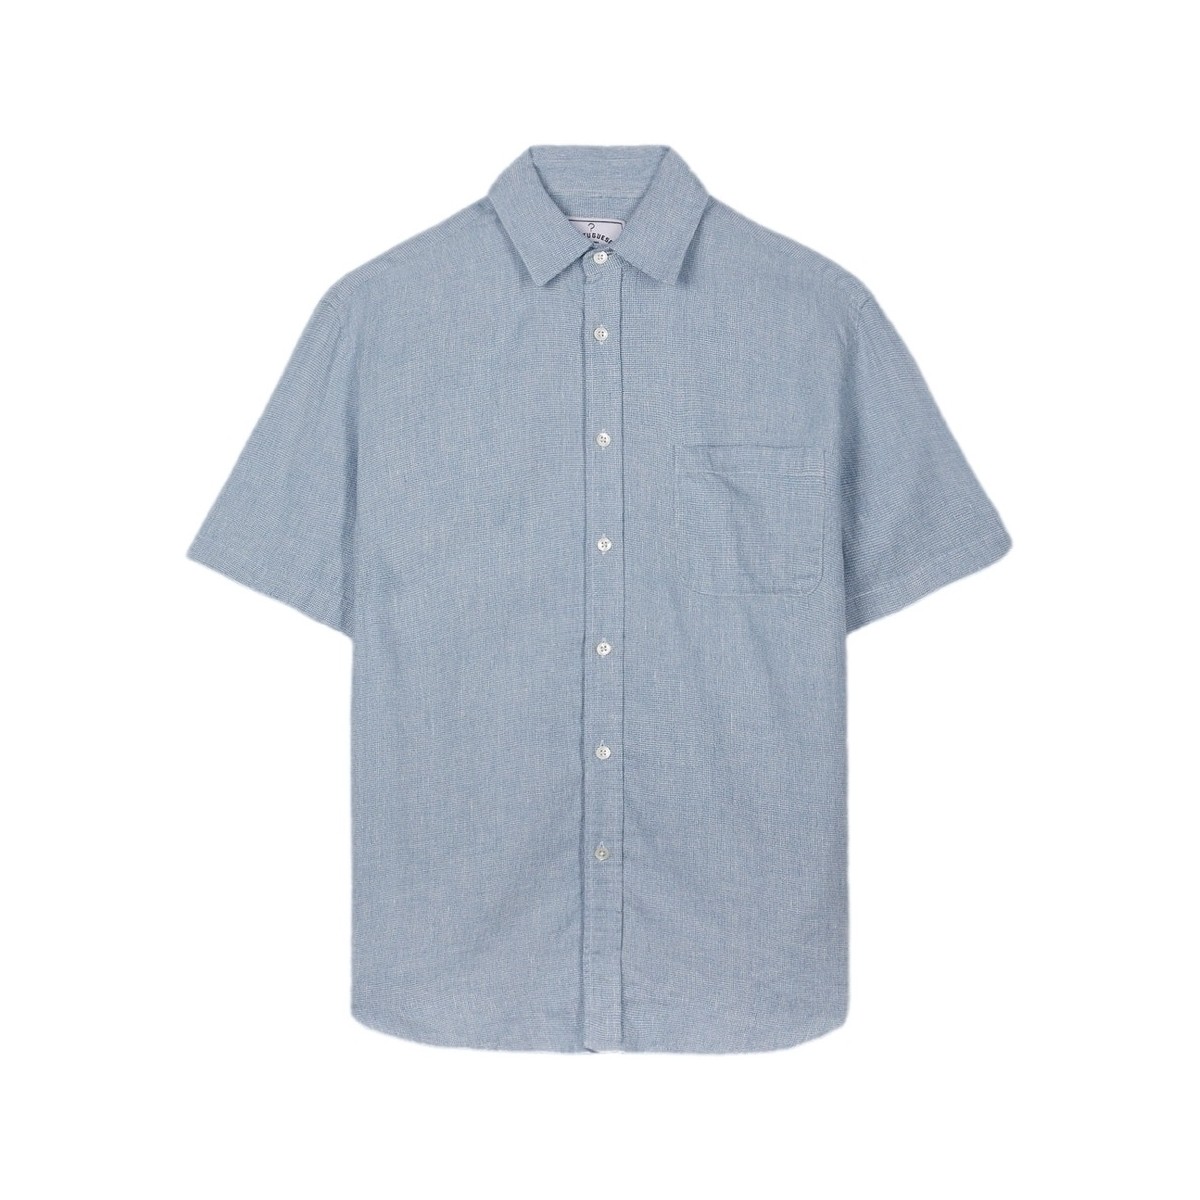 Abbigliamento Uomo Camicie maniche lunghe Portuguese Flannel New Highline Shirt Blu